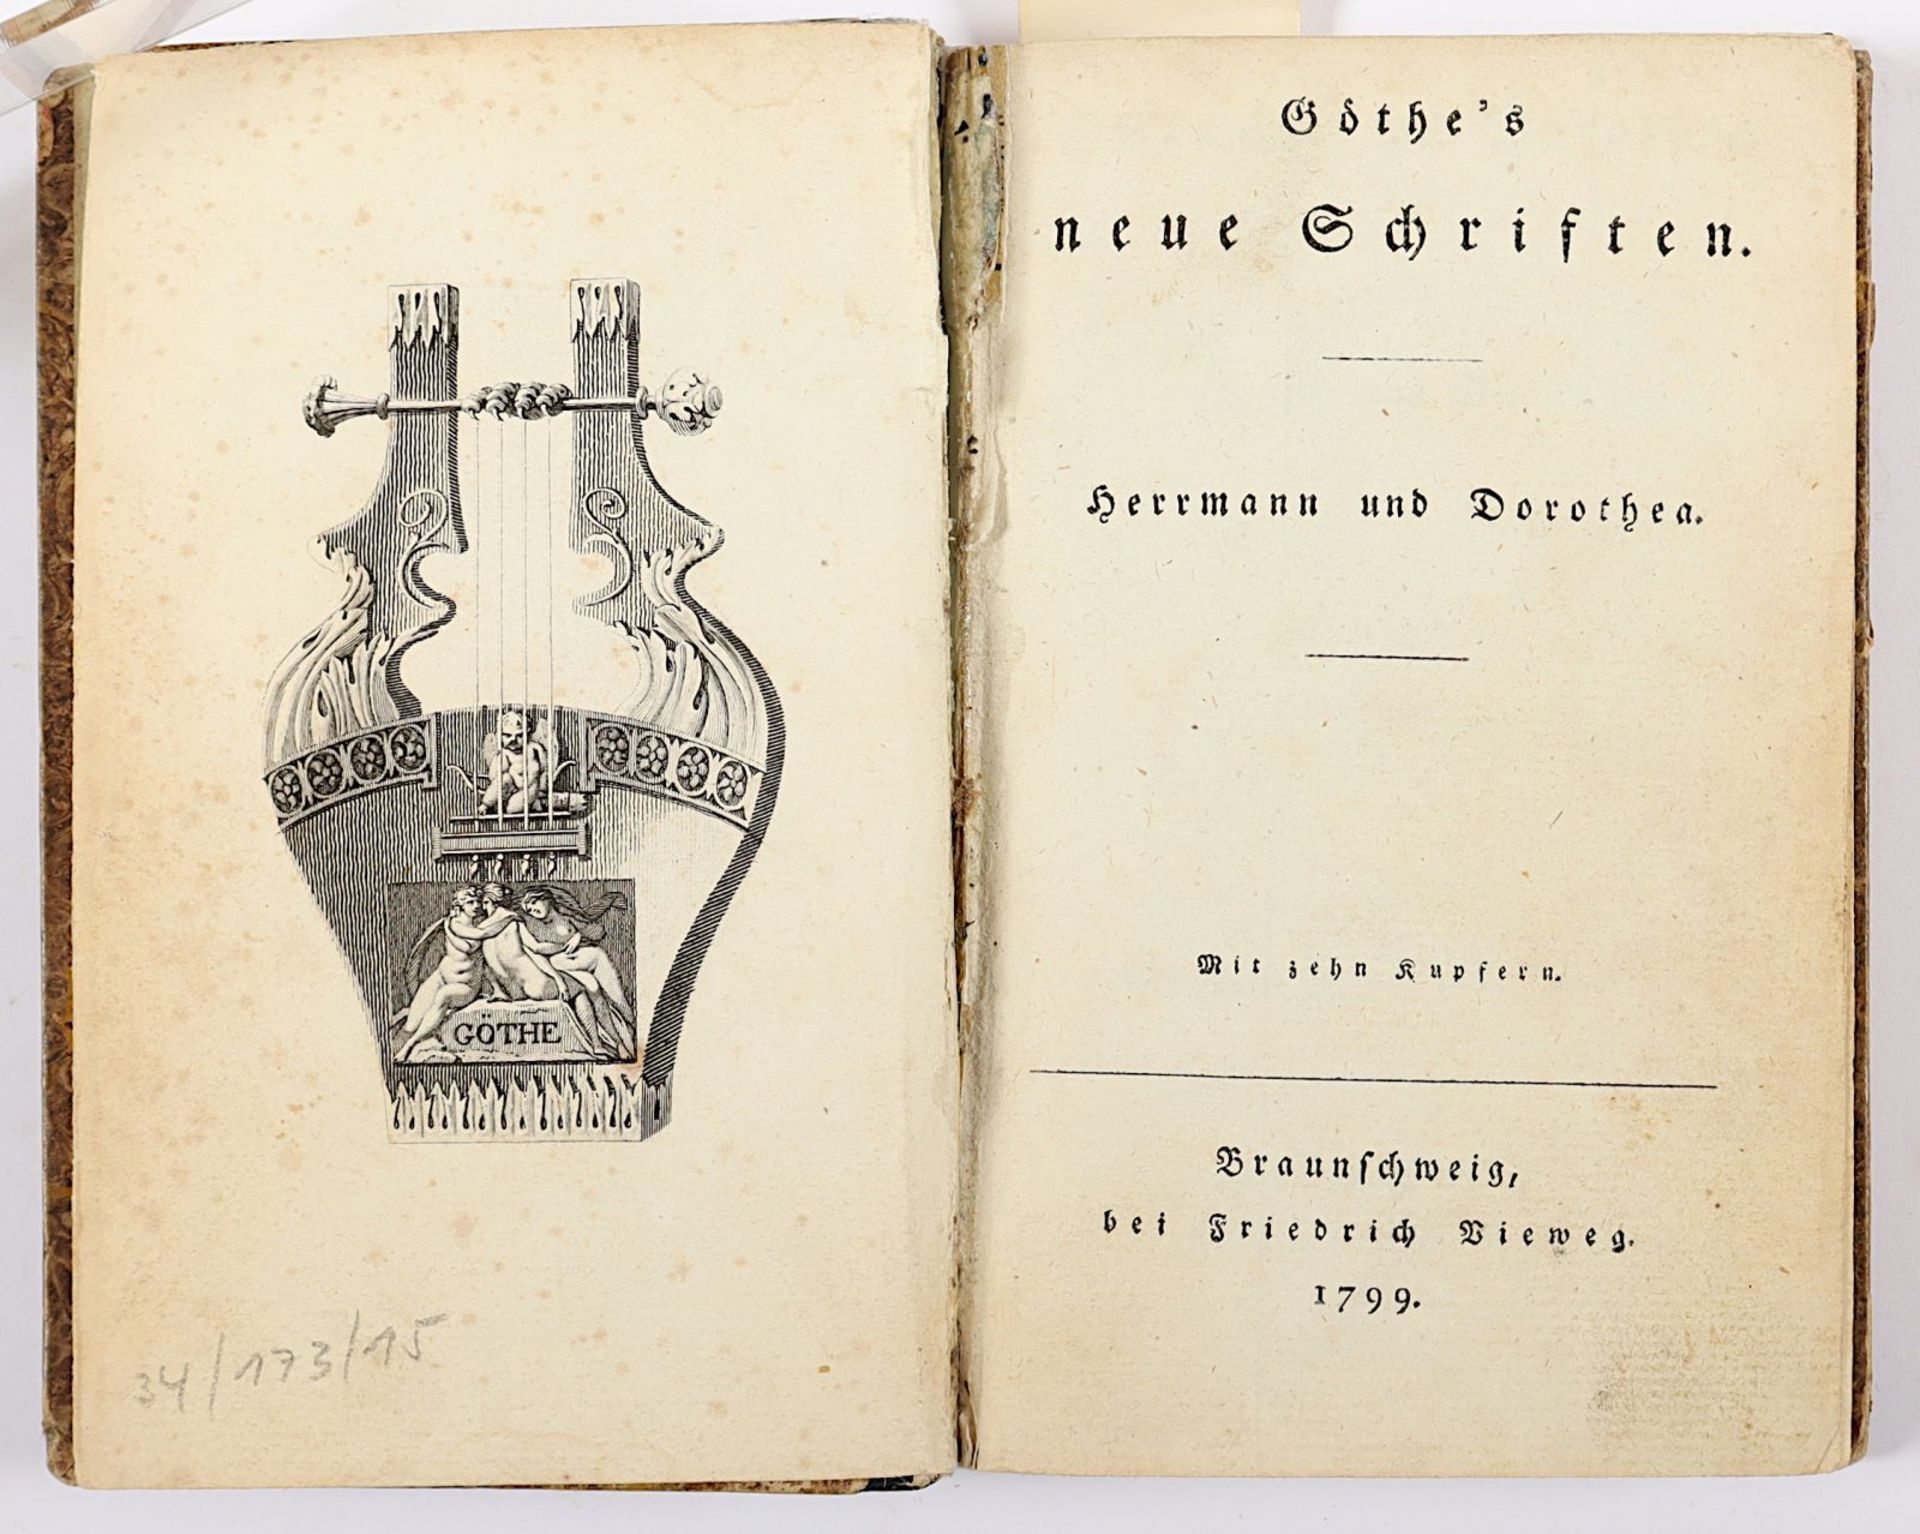 Goethe, Herrmann und Dorothea, Braunschweig, 1799